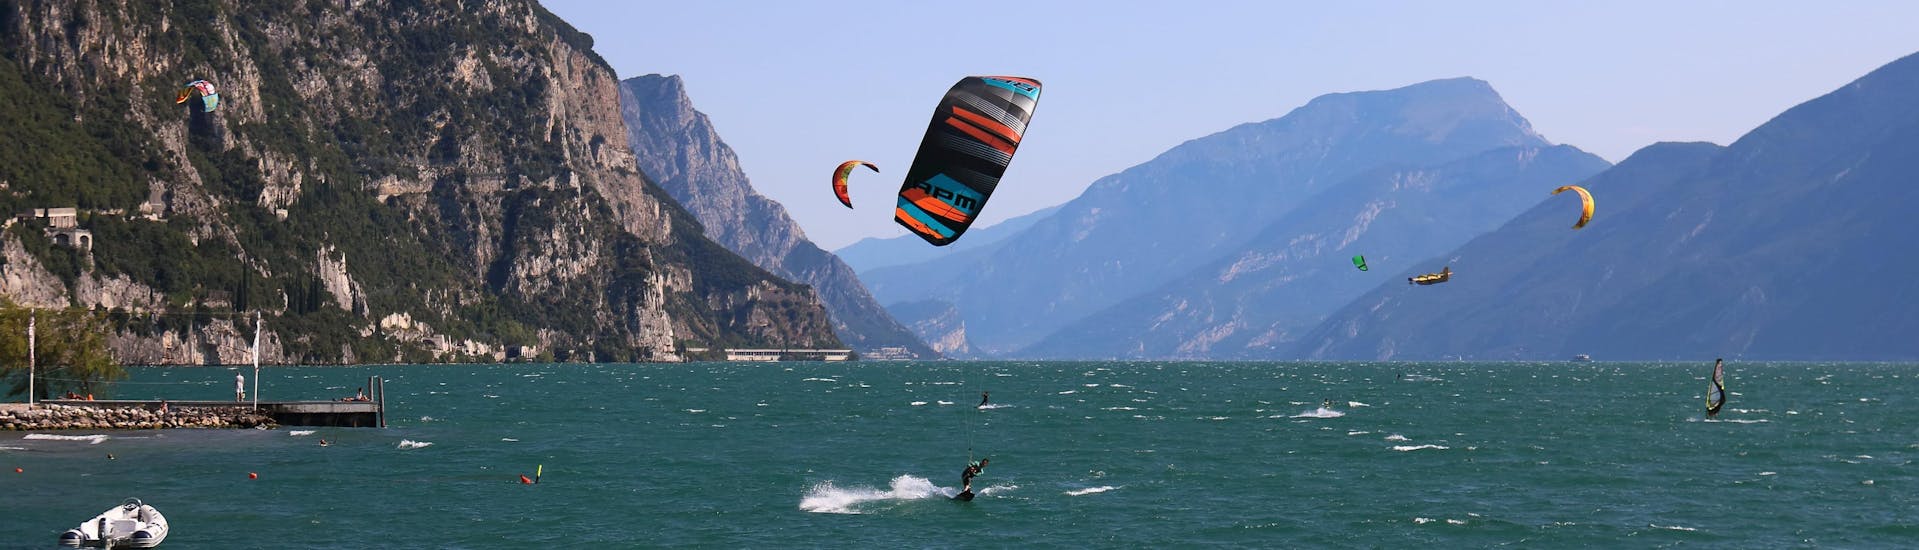 Una surfista sfida le onde facendo surf presso Lago di Garda.